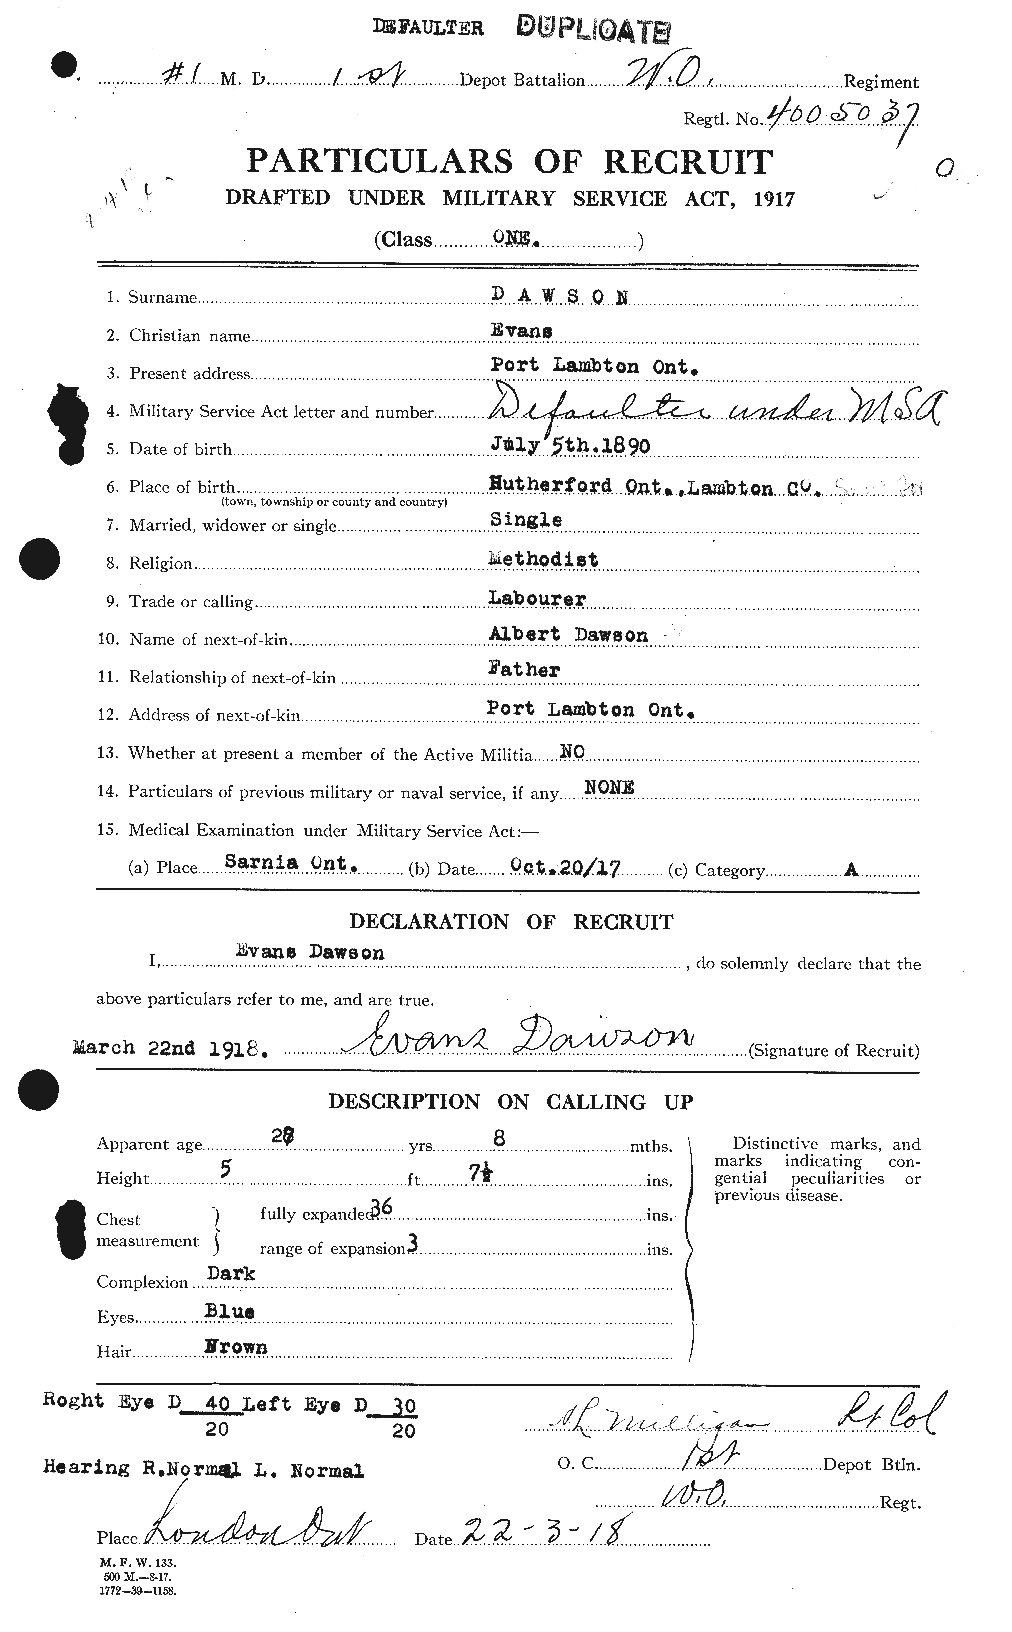 Dossiers du Personnel de la Première Guerre mondiale - CEC 285142a